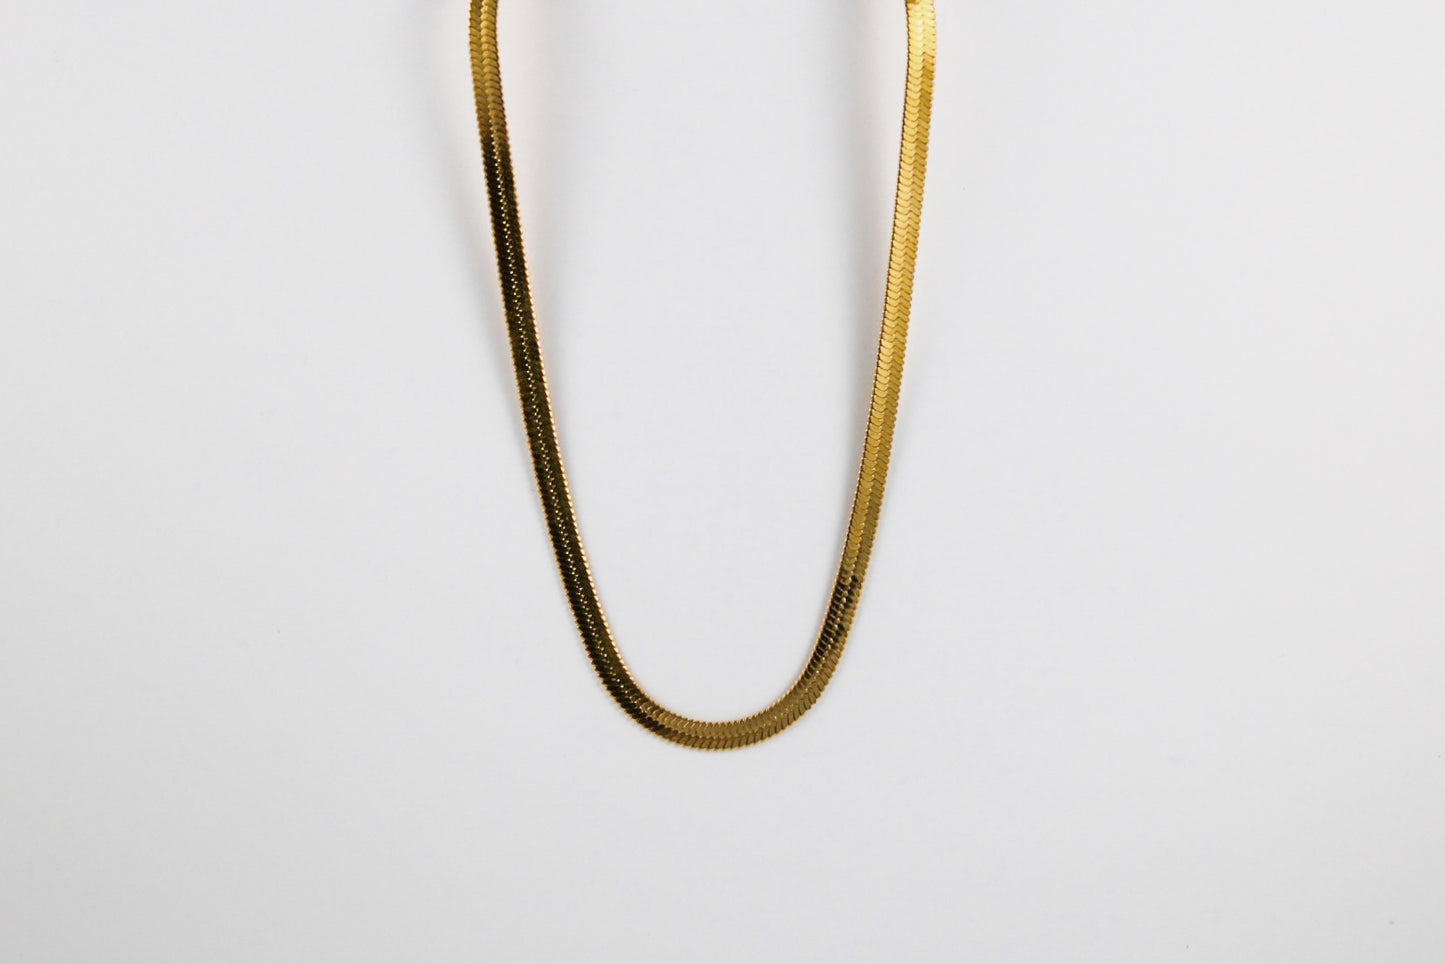 4mm golden snake chain